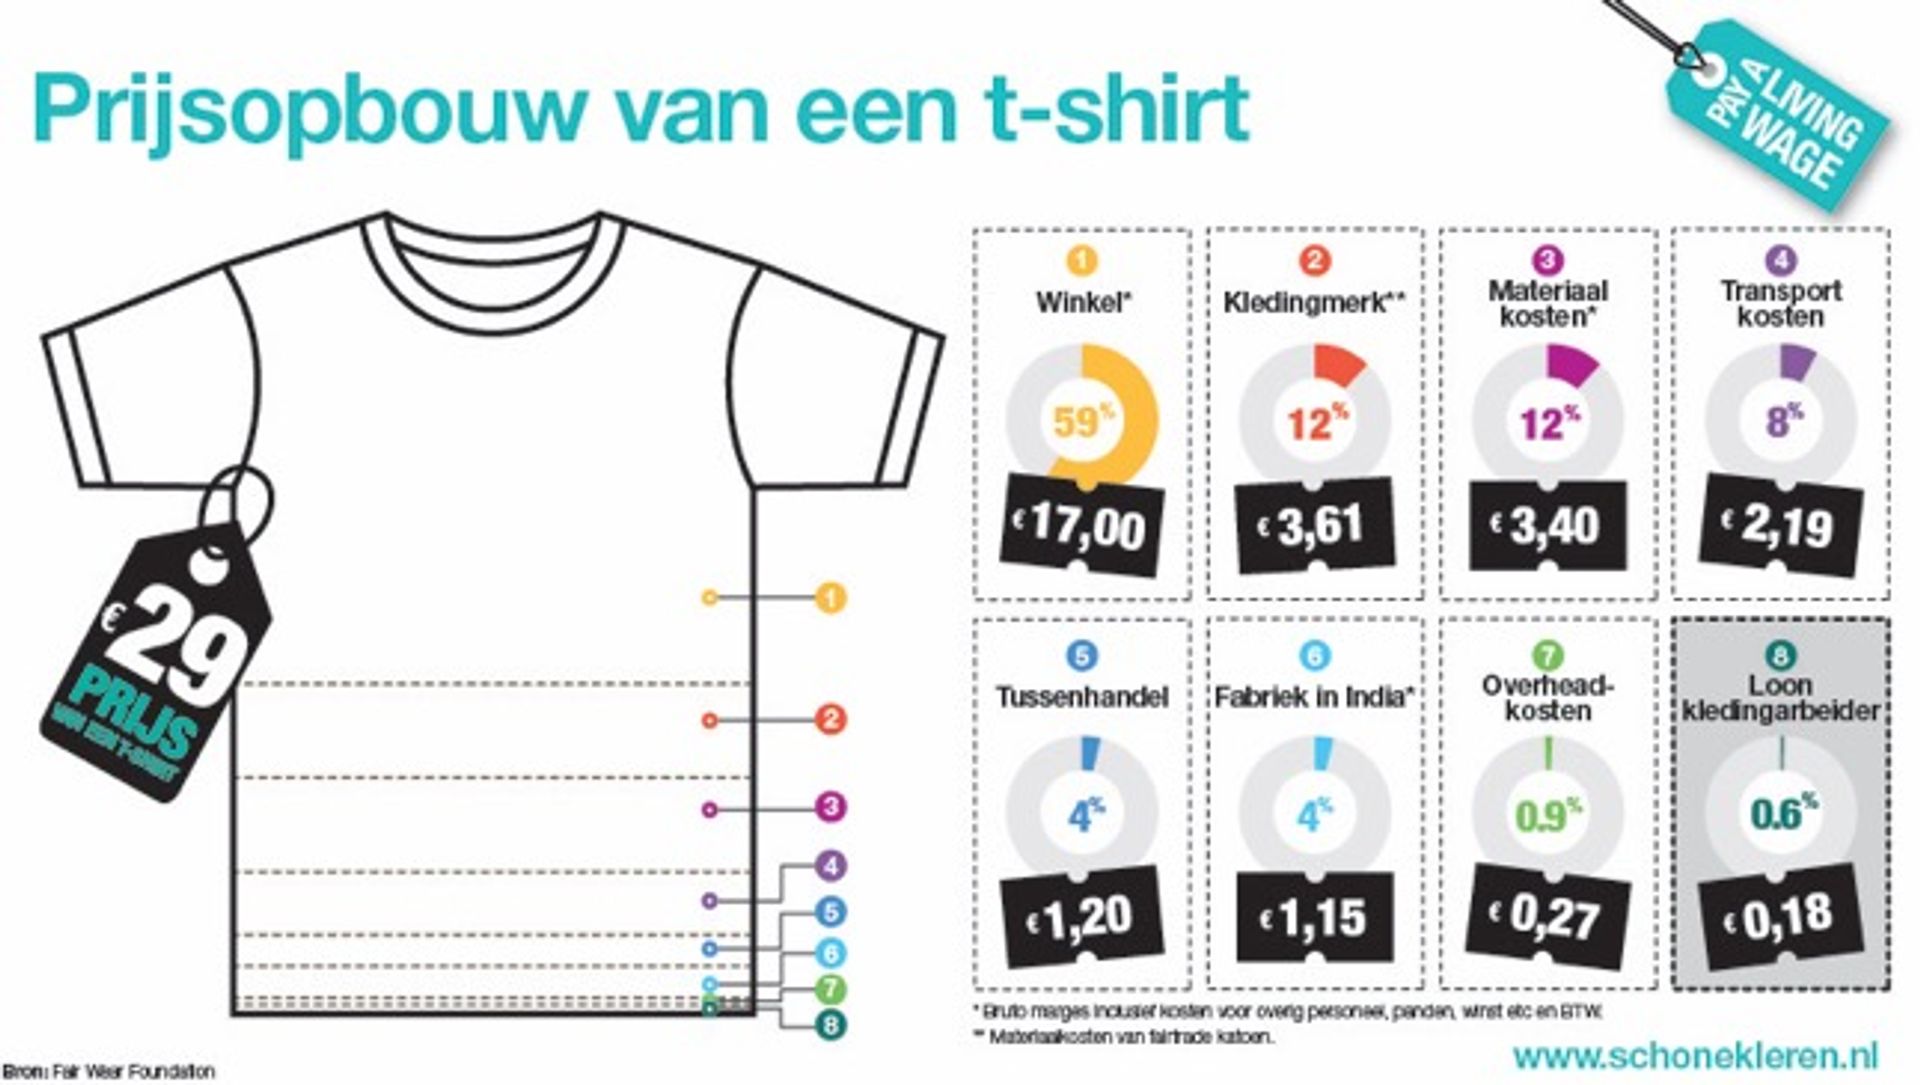 Duurzame kleding: prijsopbouw van een T-shirt